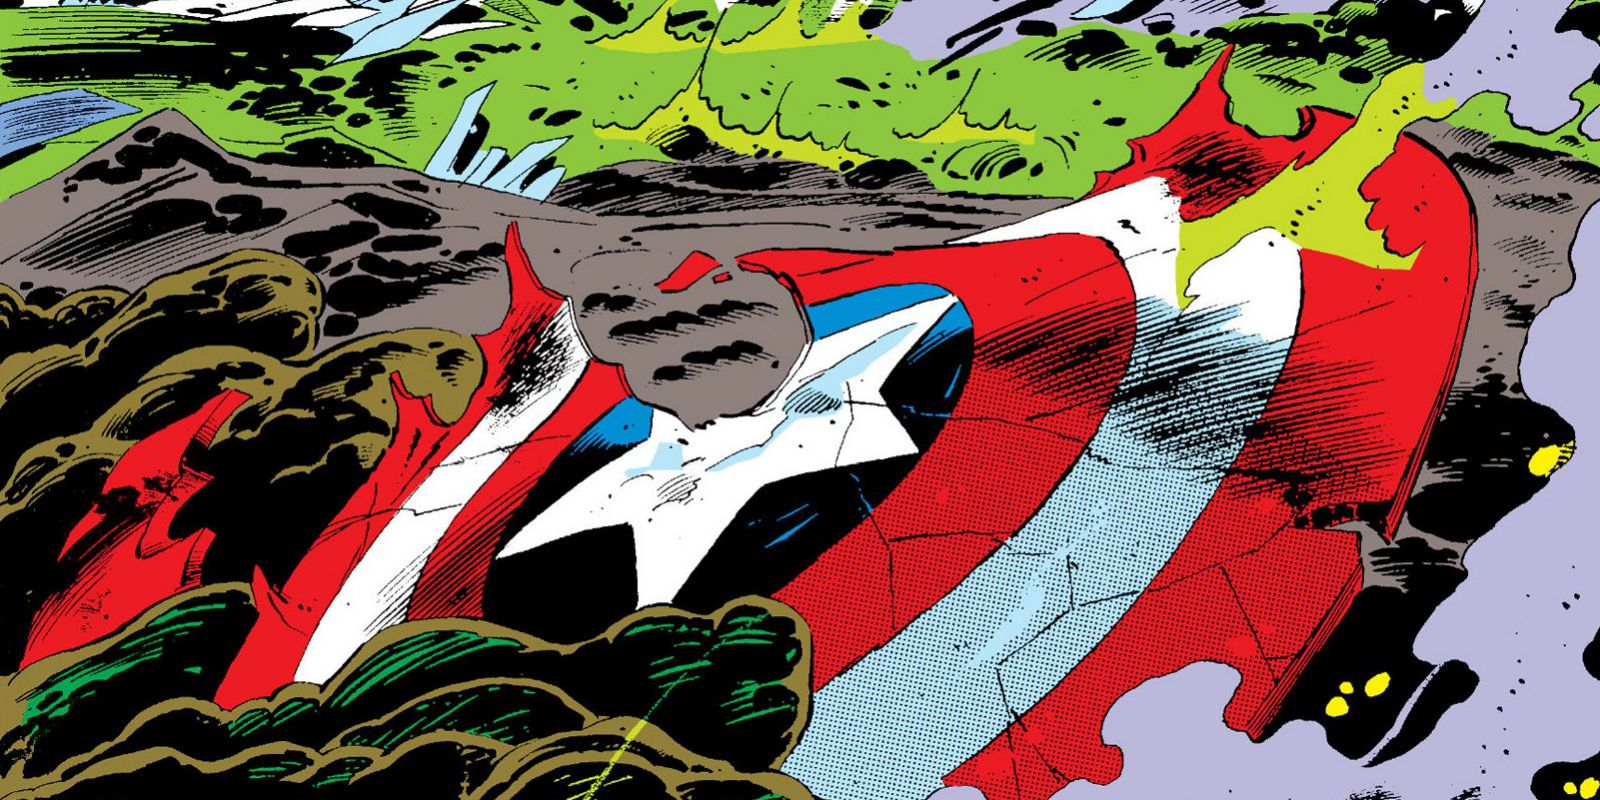 Captain America's shield broken in Secret Wars comic